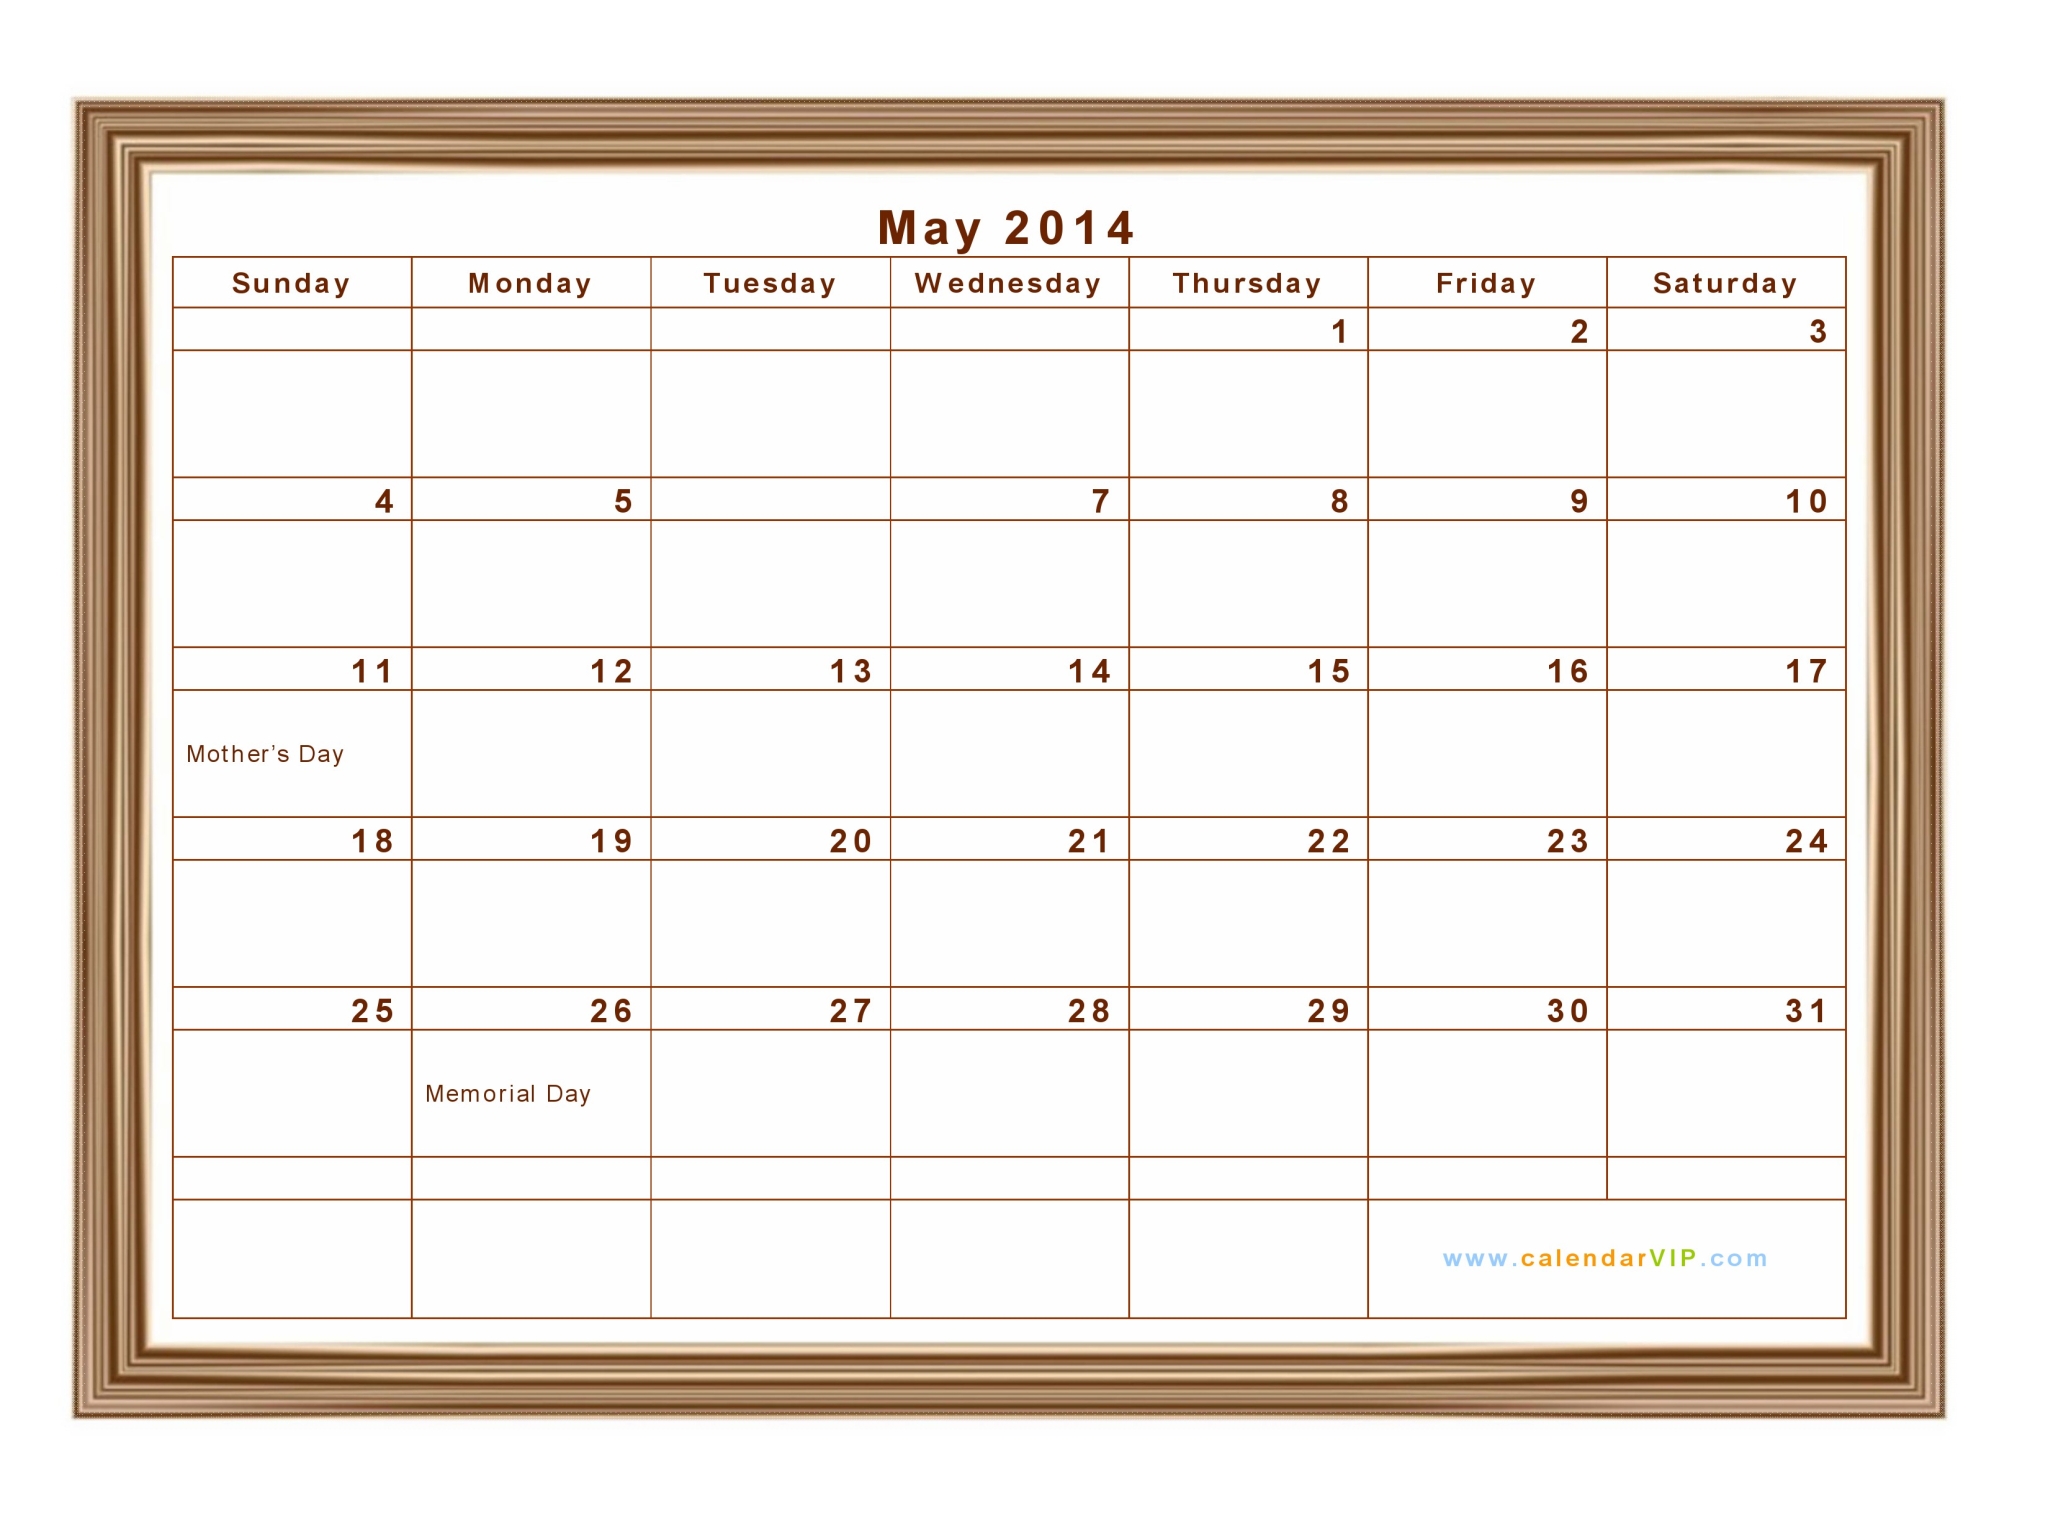 May 2014 Calendar Blank Printable Calendar Template in PDF Word Excel